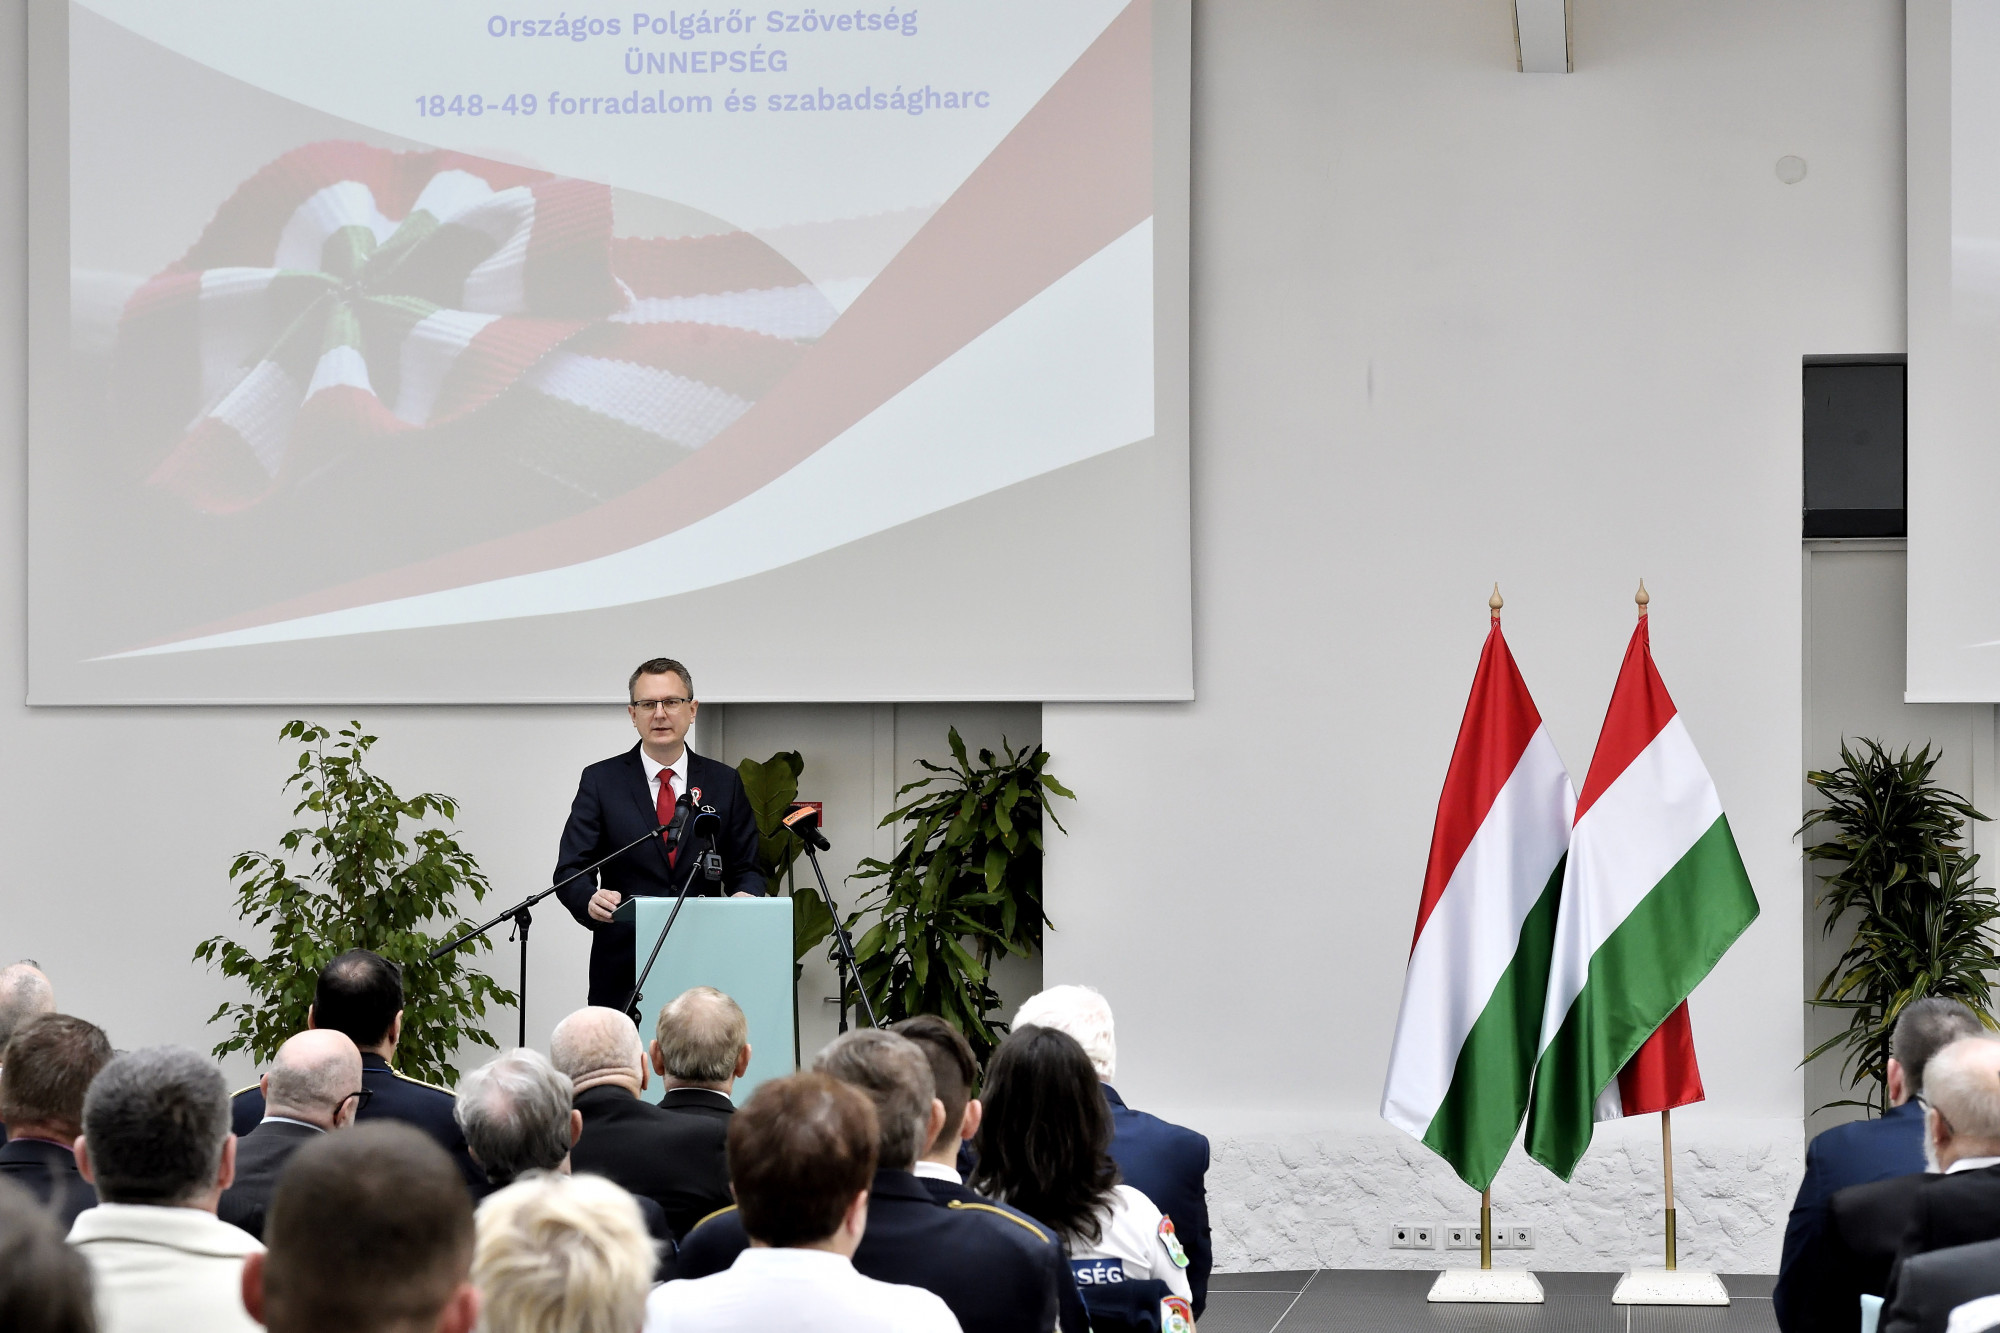 Rétvári Bence: Sűrű időkben hideg fejre és magyar szívre van szükség